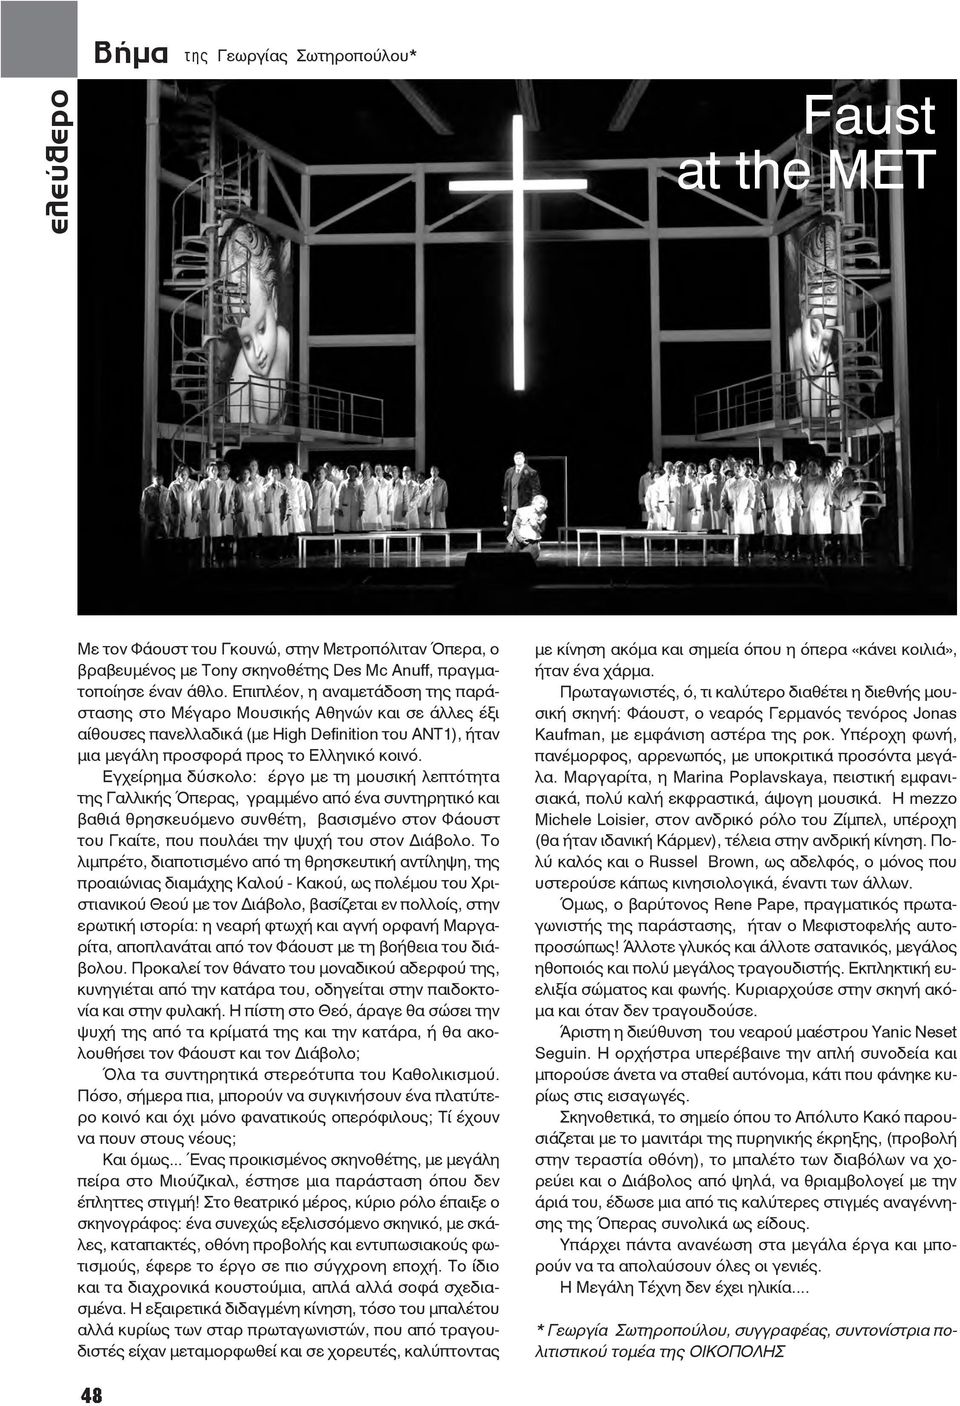 Εγχείρημα δύσκολο: έργο με τη μουσική λεπτότητα της Γαλλικής Όπερας, γραμμένο από ένα συντηρητικό και βαθιά θρησκευόμενο συνθέτη, βασισμένο στον Φάουστ του Γκαίτε, που πουλάει την ψυχή του στον